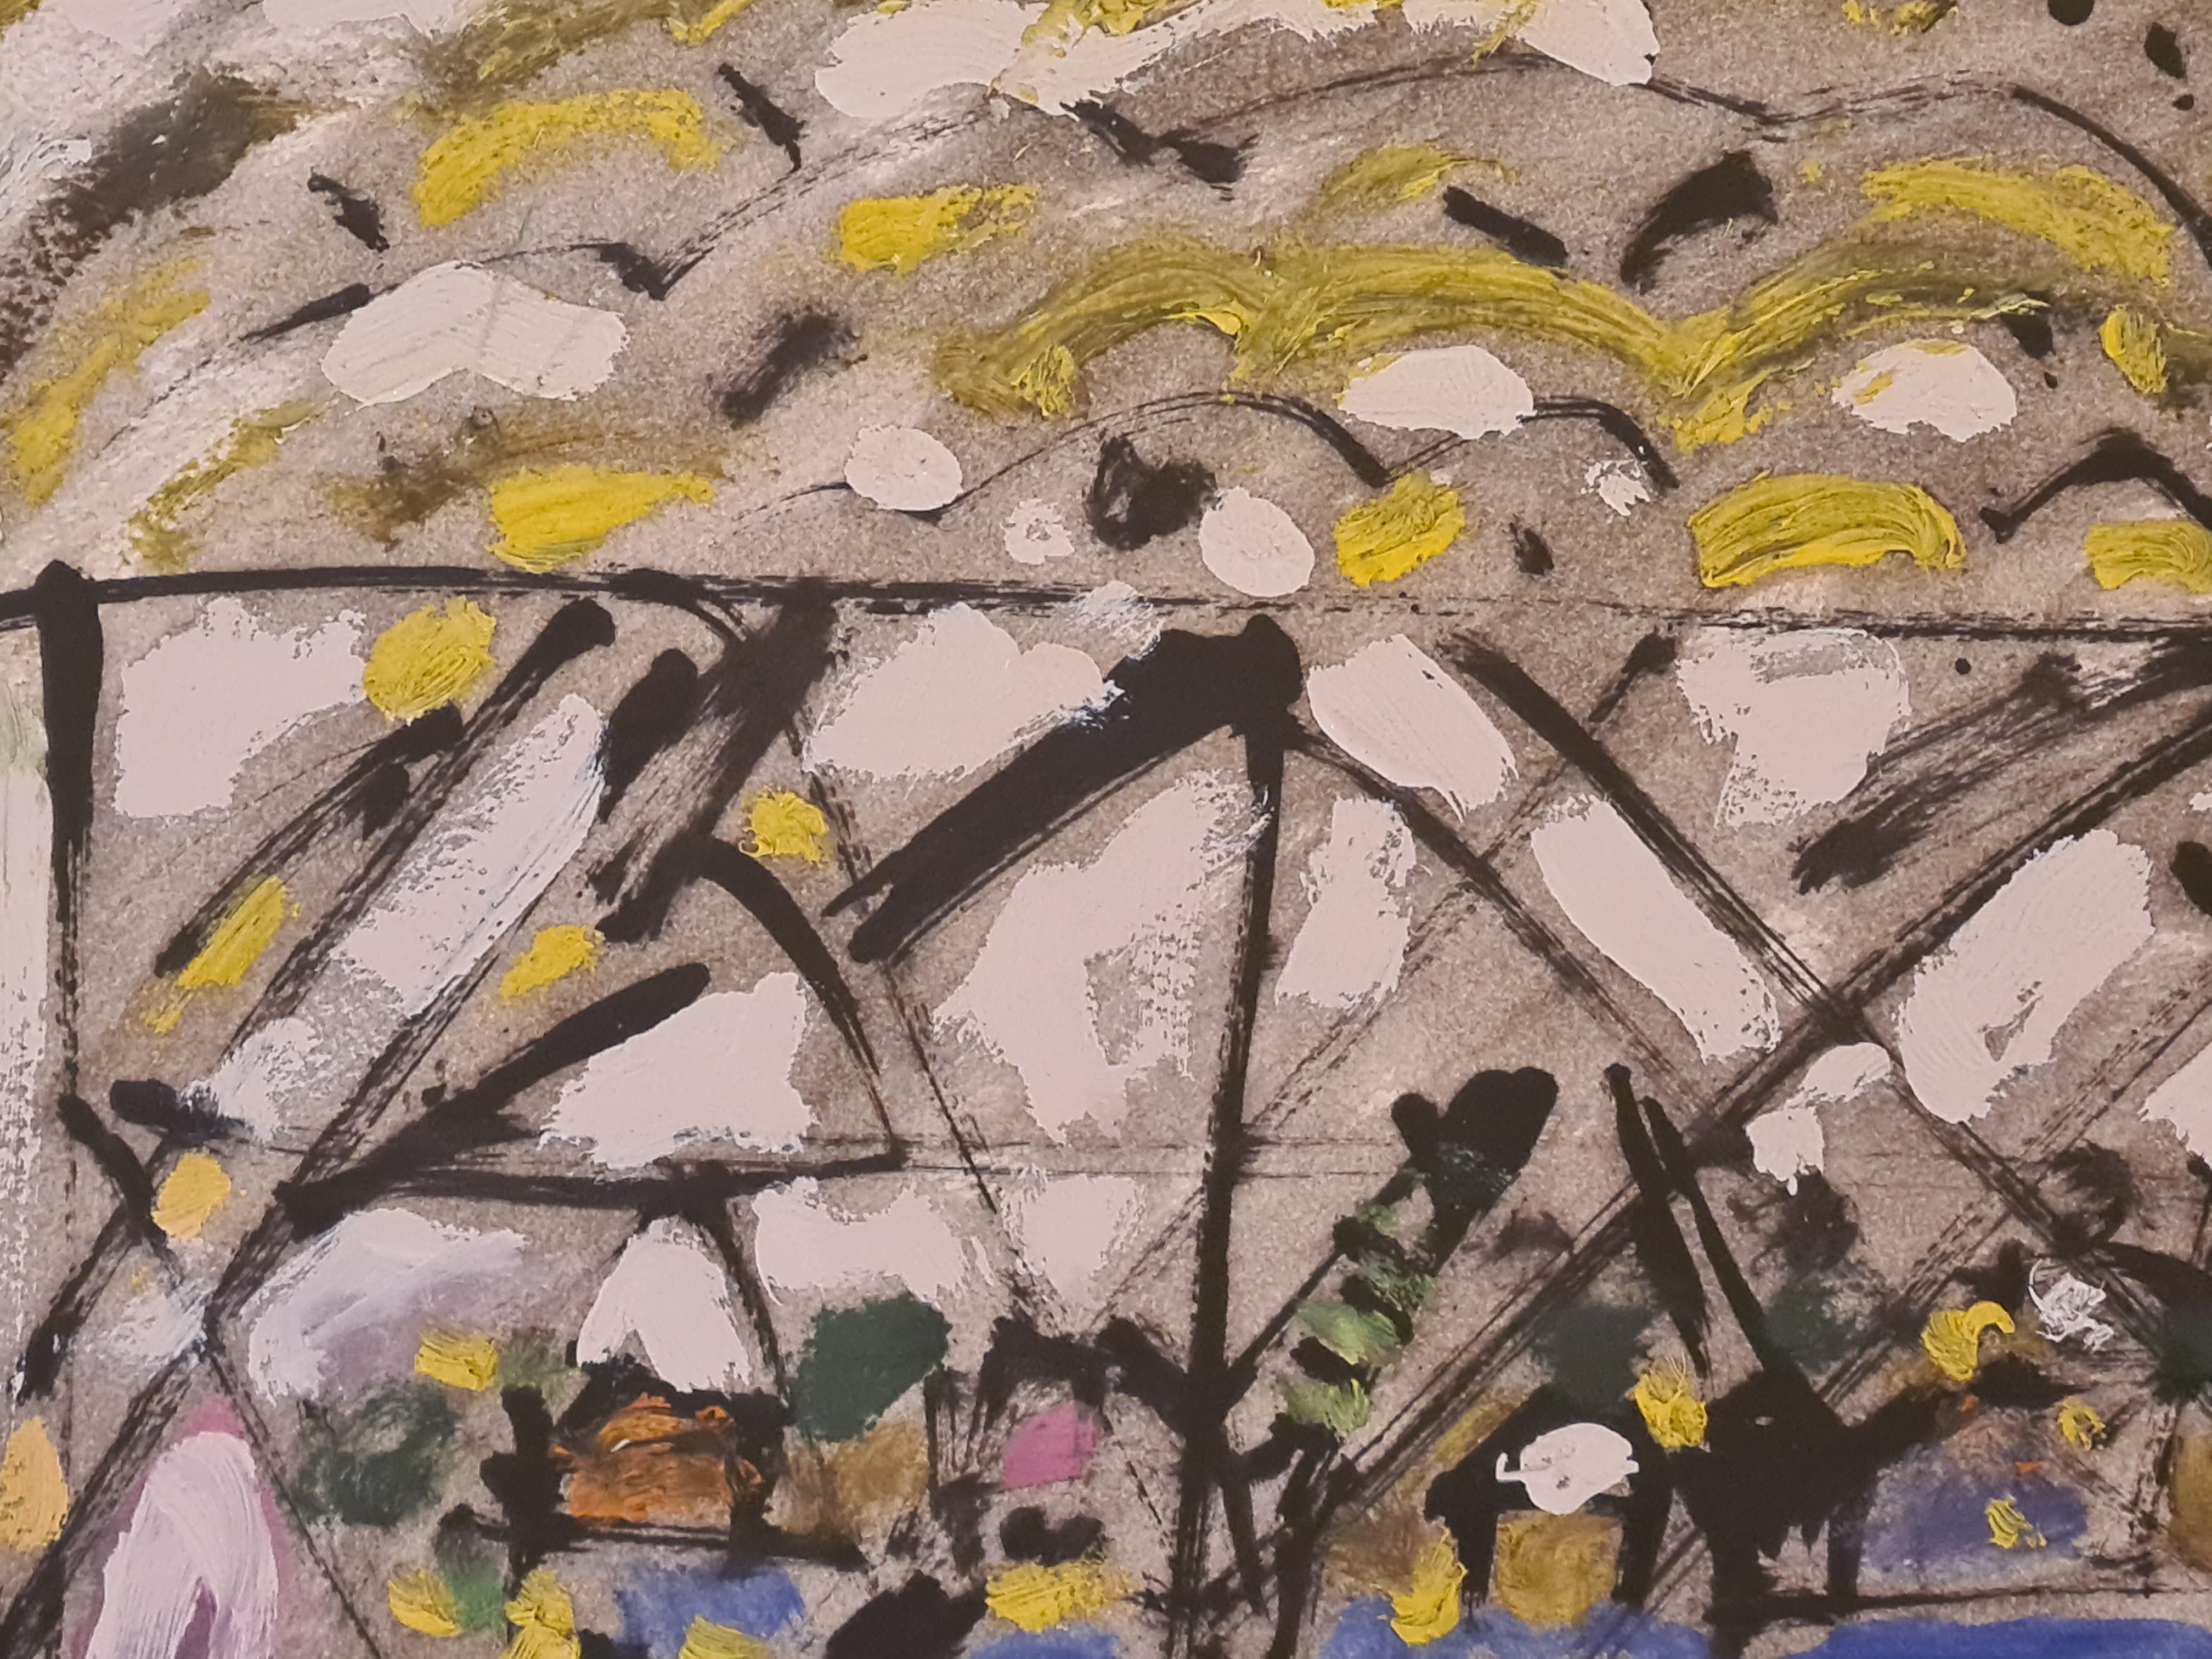 Huile/acrylique expressionniste sur papier de la fin du 20e siècle de l'artiste français Armand Avril. Signé et daté en bas à droite.

Le tableau représente la vue à travers la structure métallique d'un pont possible à Marseille ou à La Ciotat dans